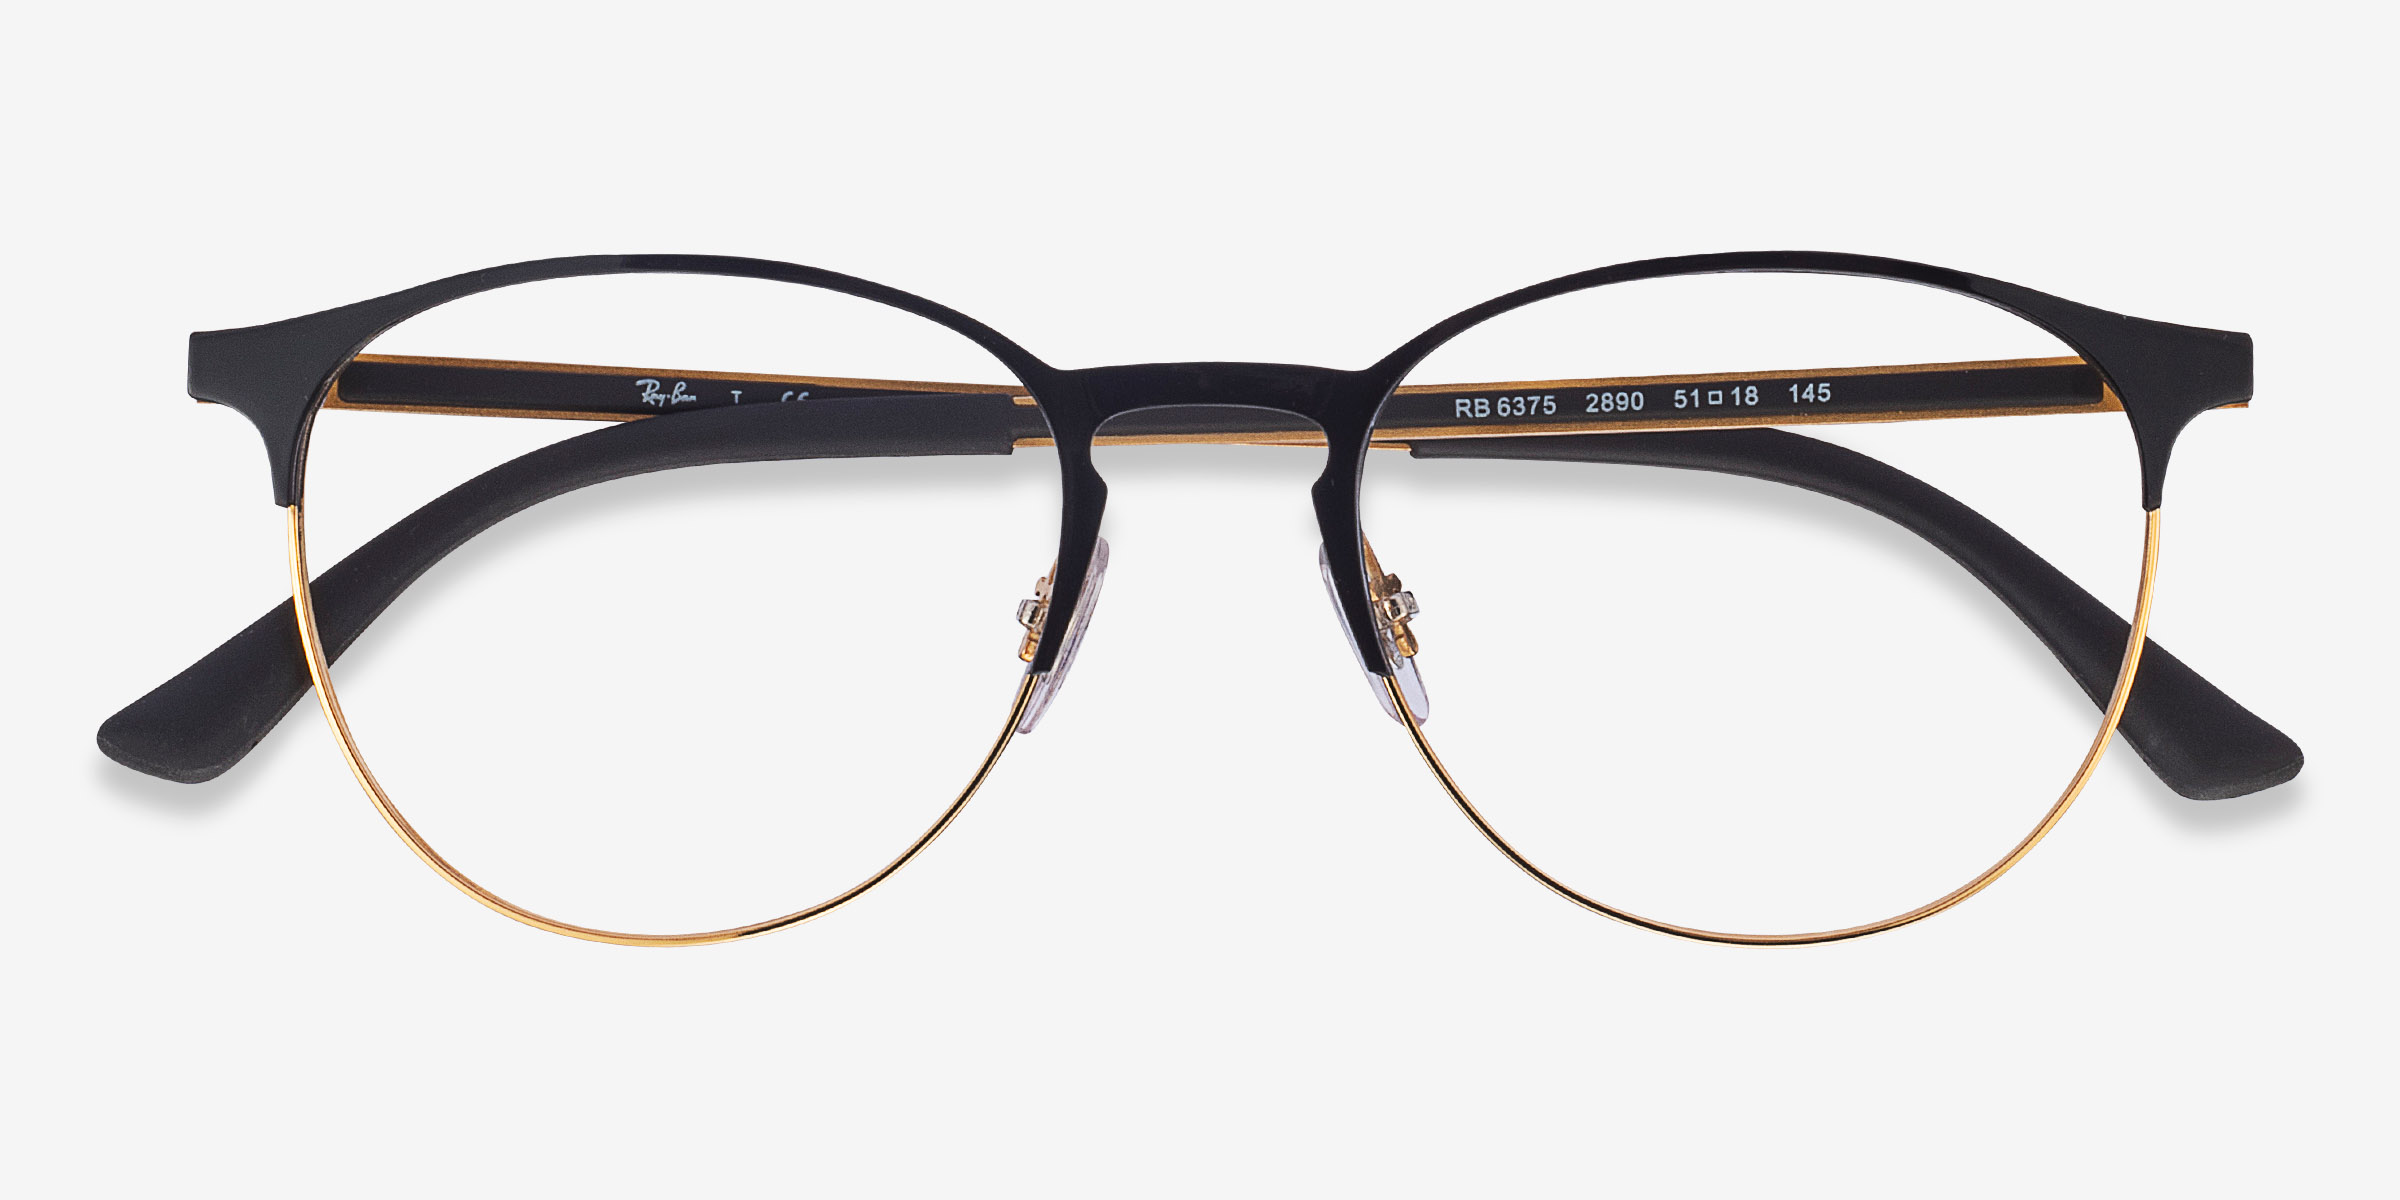 Ray-Ban RB6375 - Round Black Gold Frame Eyeglasses | Eyebuydirect